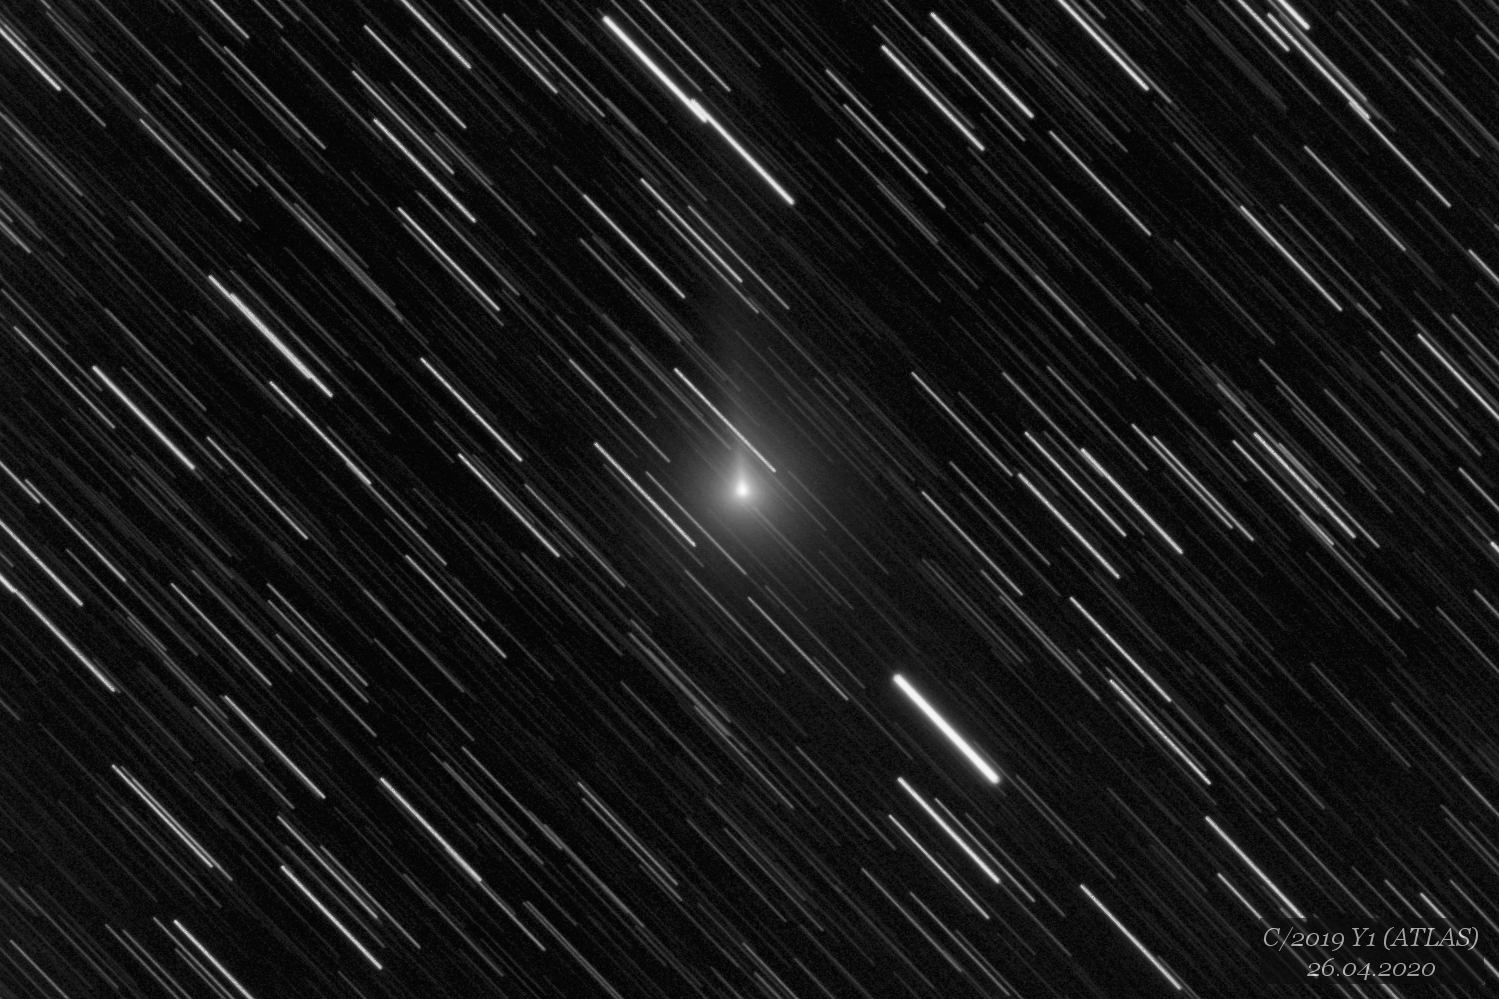 kometa C/2019 Y1 (ATLAS)